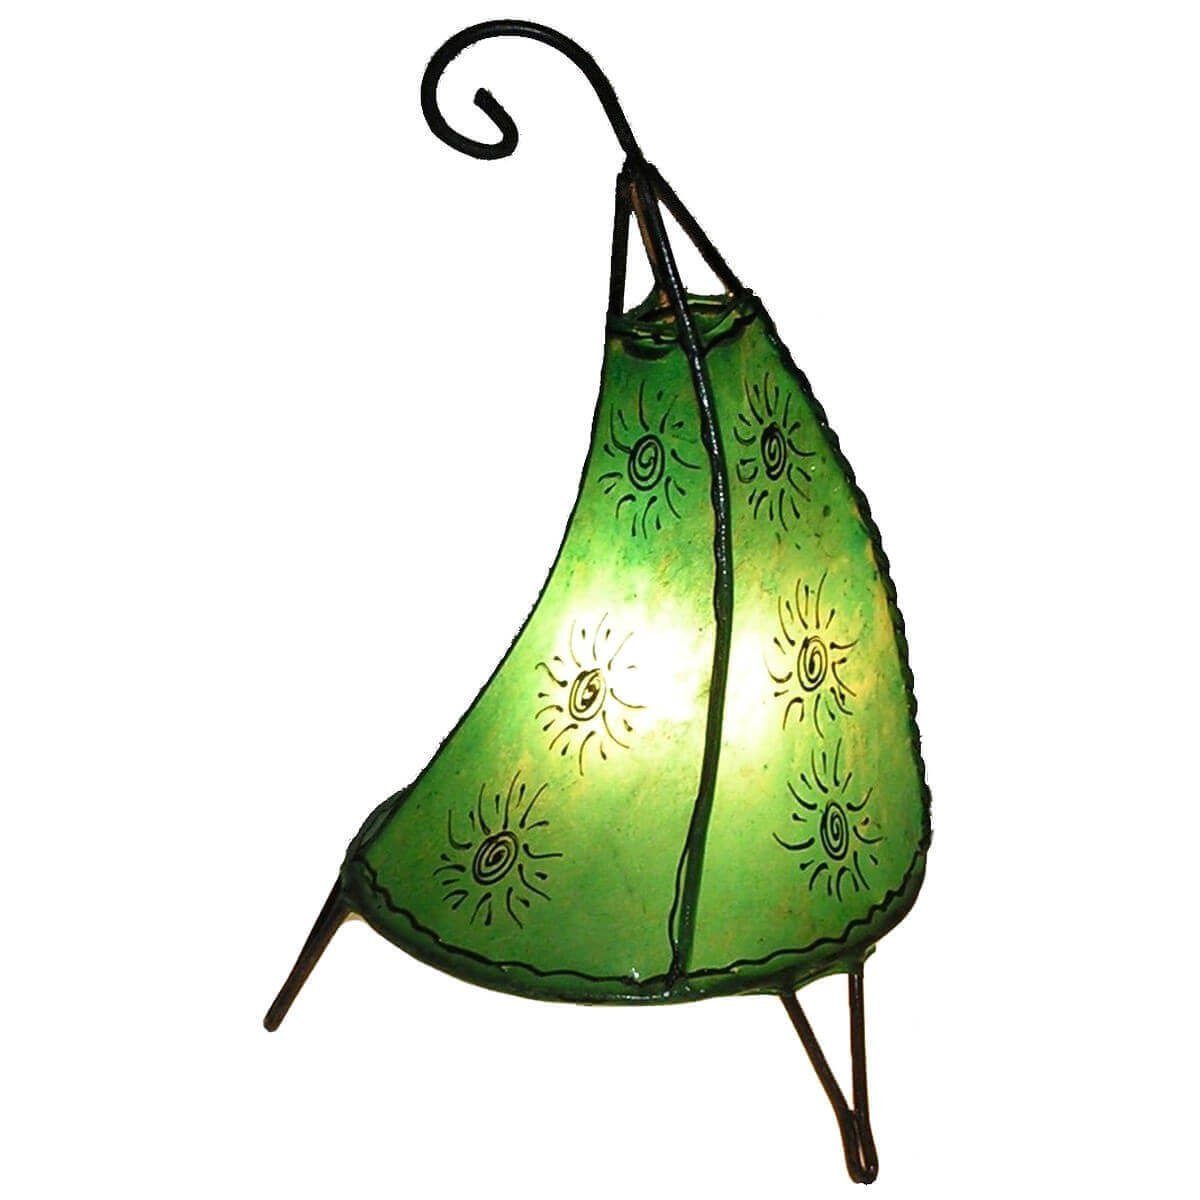 ohne Sonne SIMANDRA Warmweiß, 36 cm, Stehlampe marokkanische Lederlampe Grün Leuchtmittel, Ambilight, Tissir